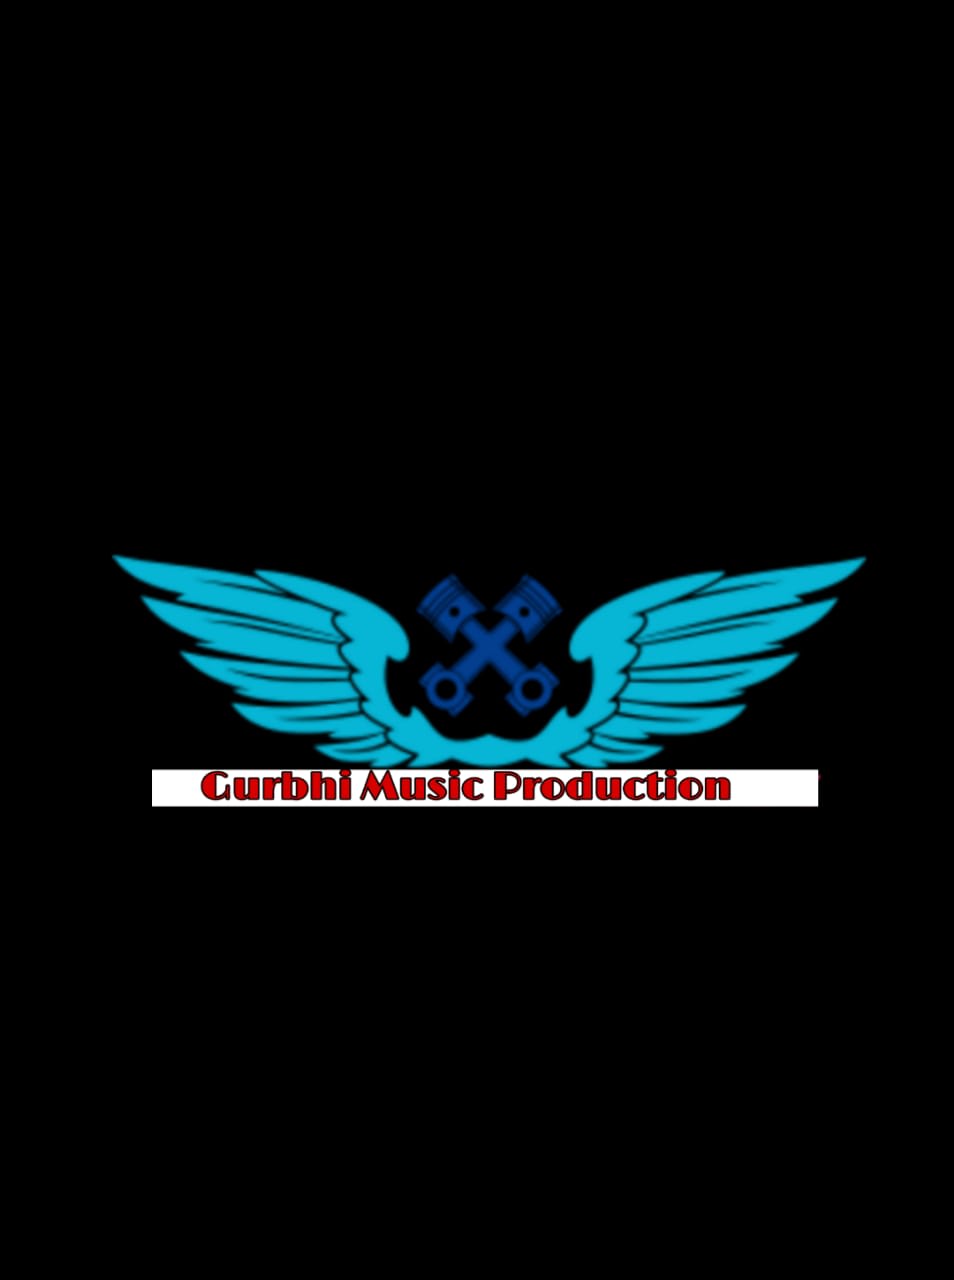 Gurbhi Music Production